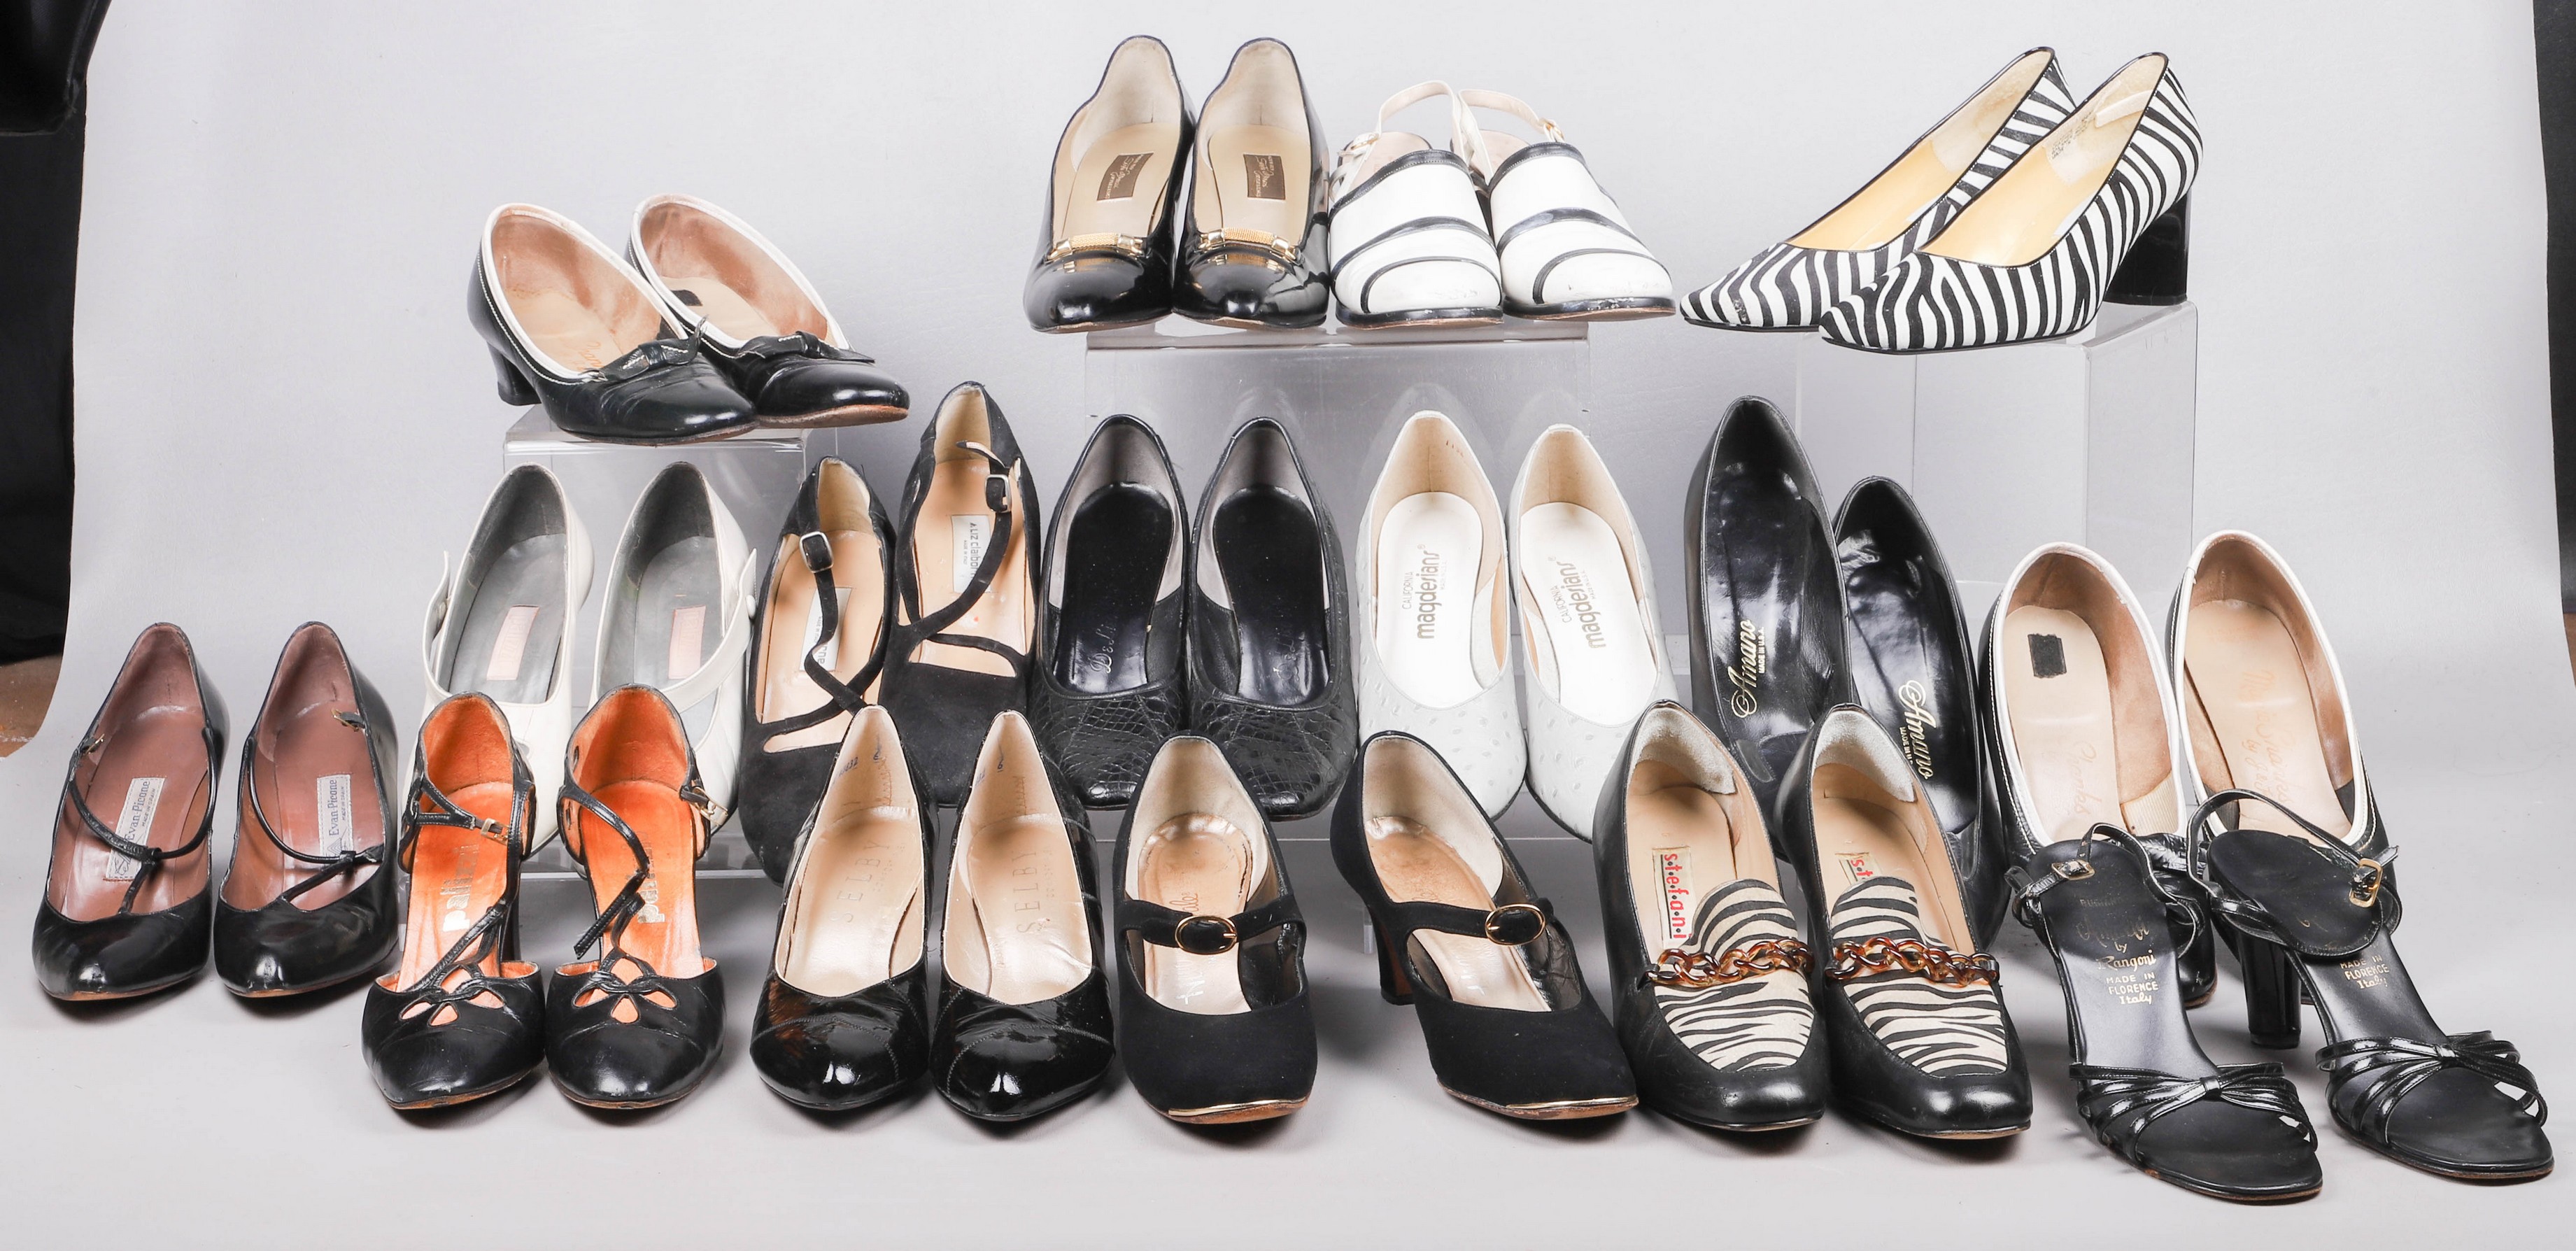 Large lot vintage ladies heels 317d3c